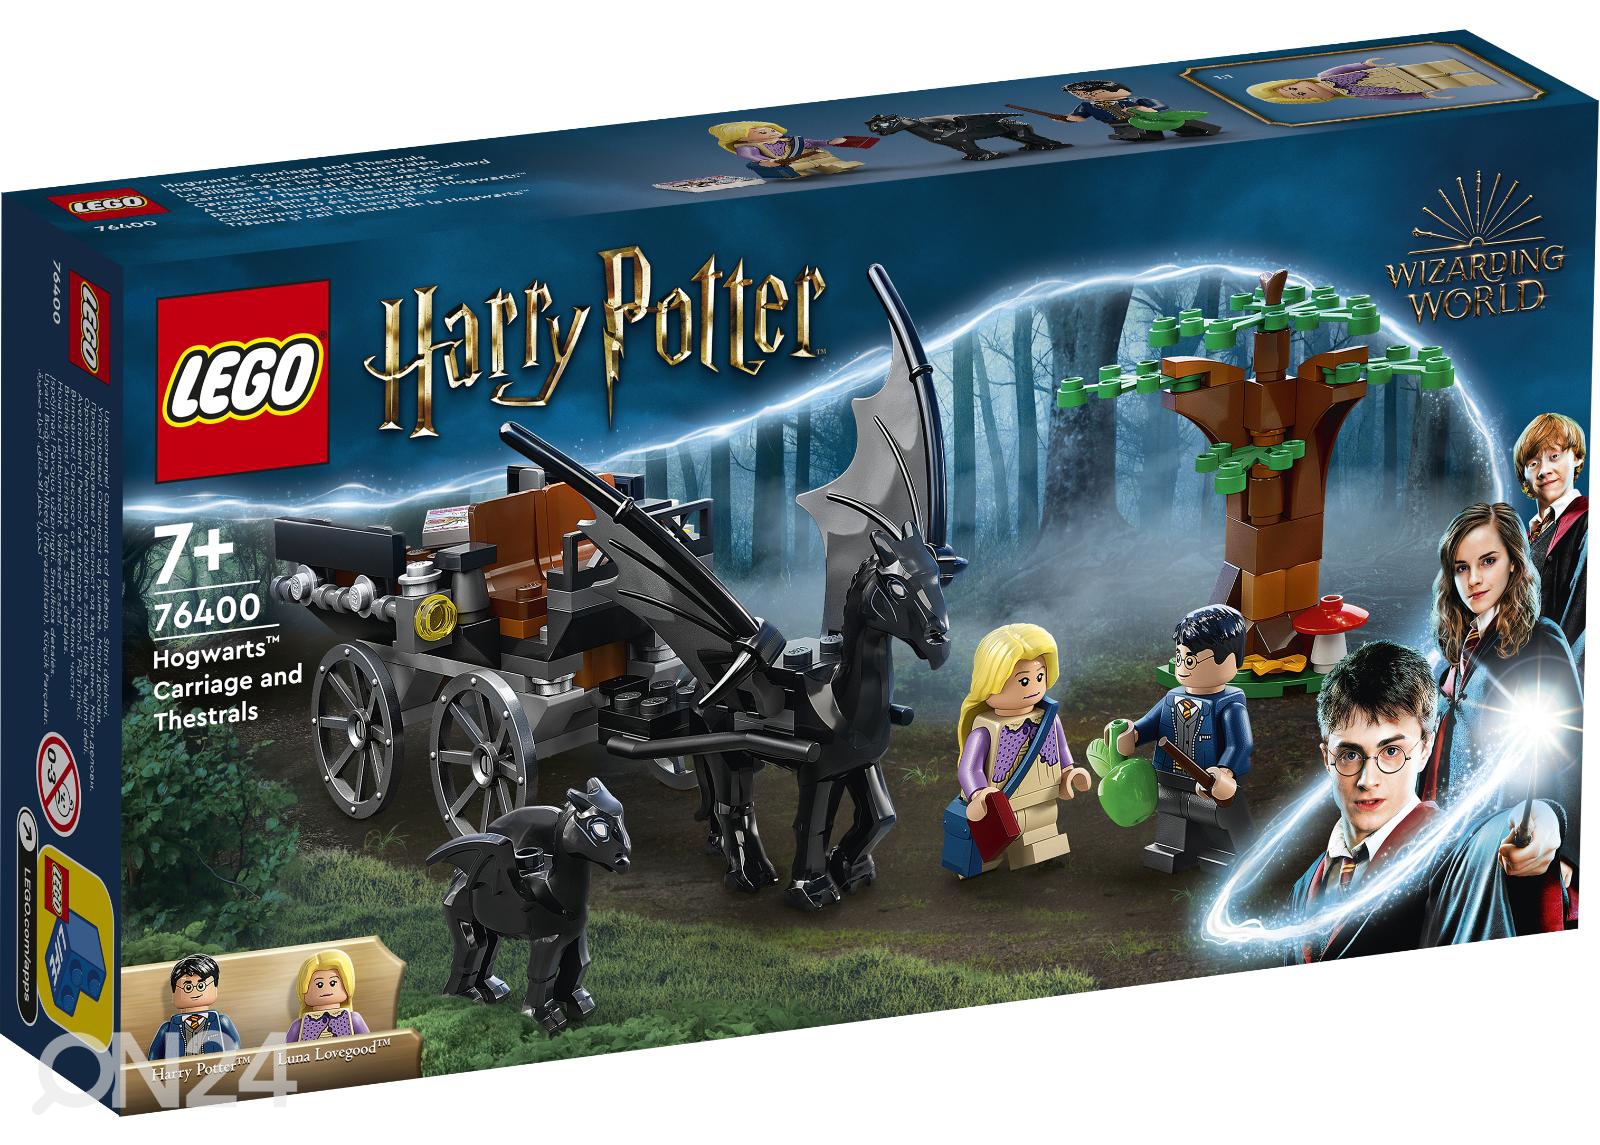 LEGO Harry Potter картеа Хогвартса и фестралы увеличить